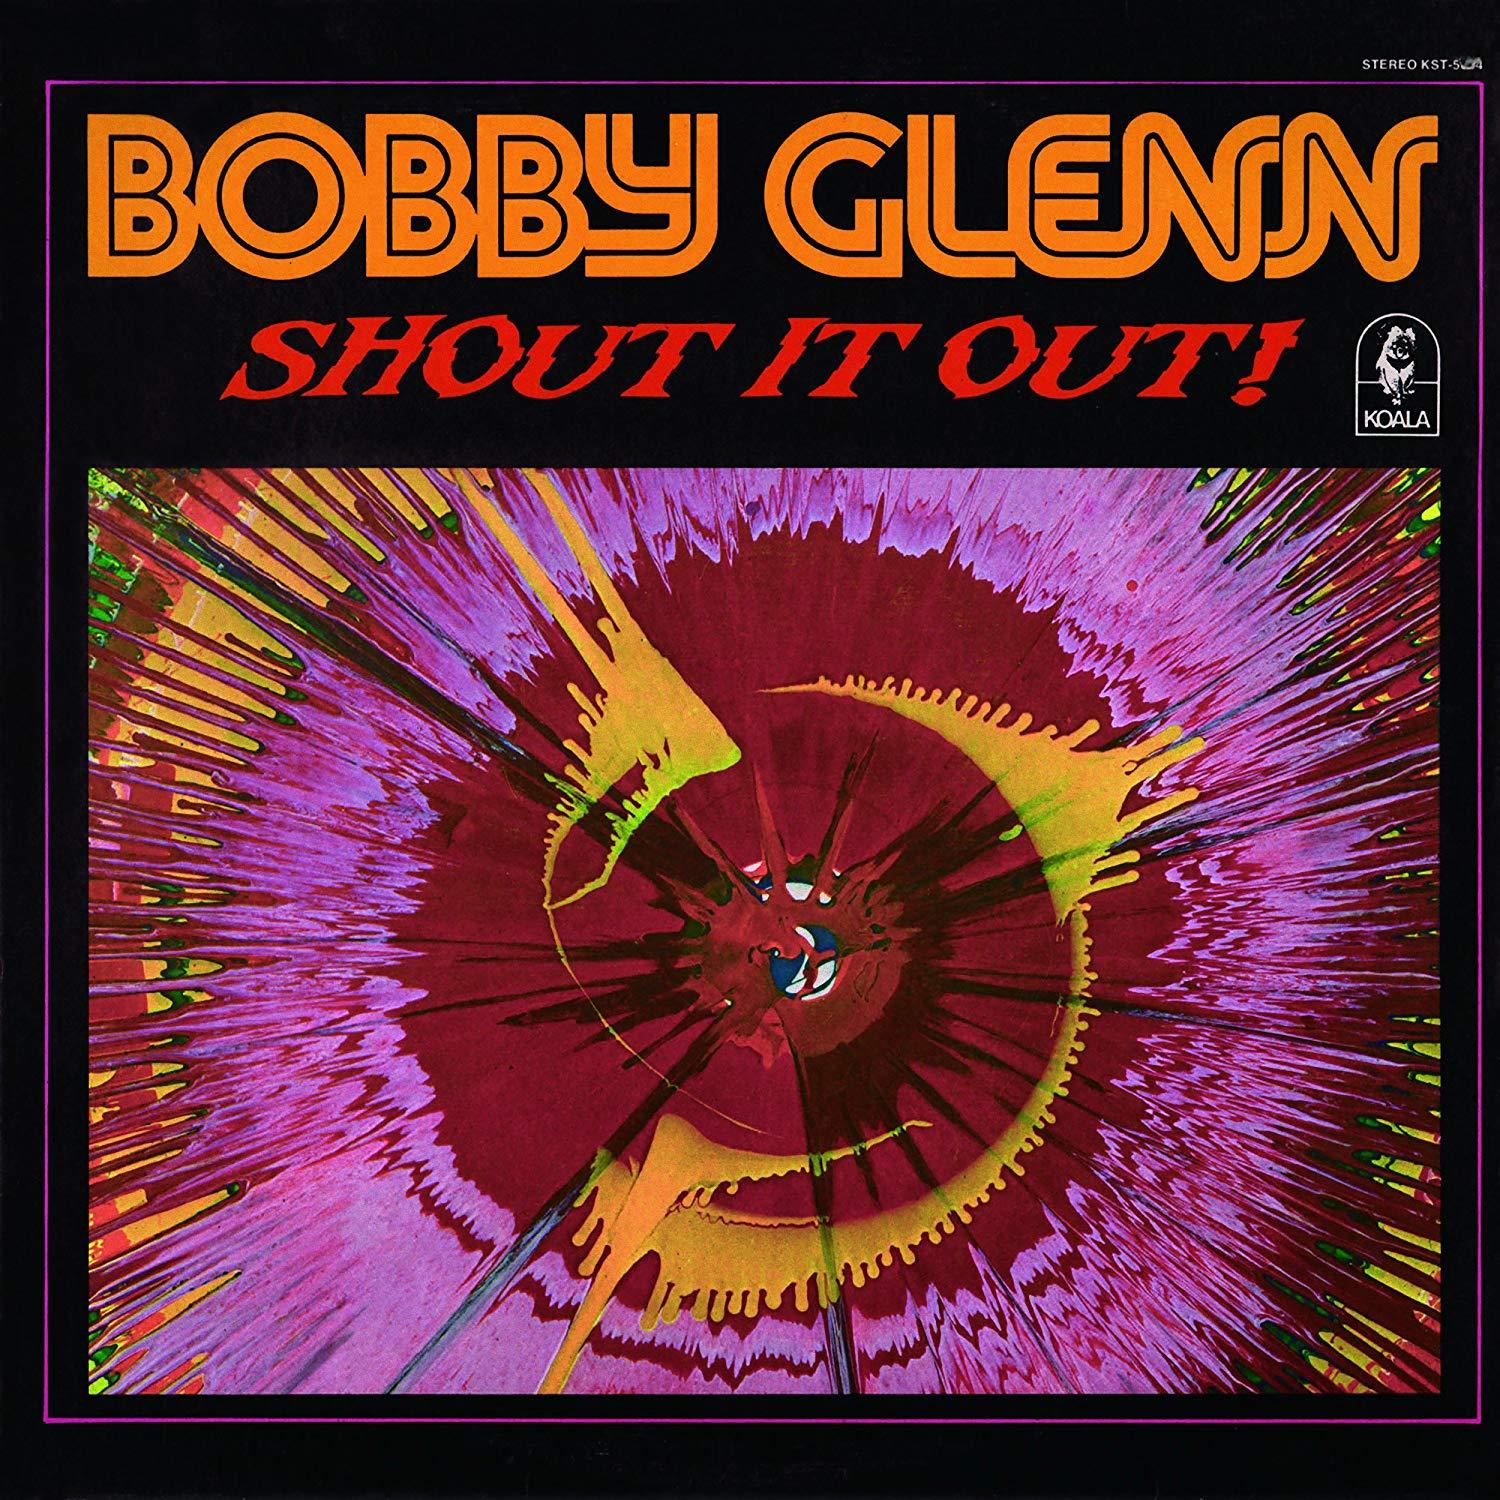 Shout It Out! / Bobby Glenn